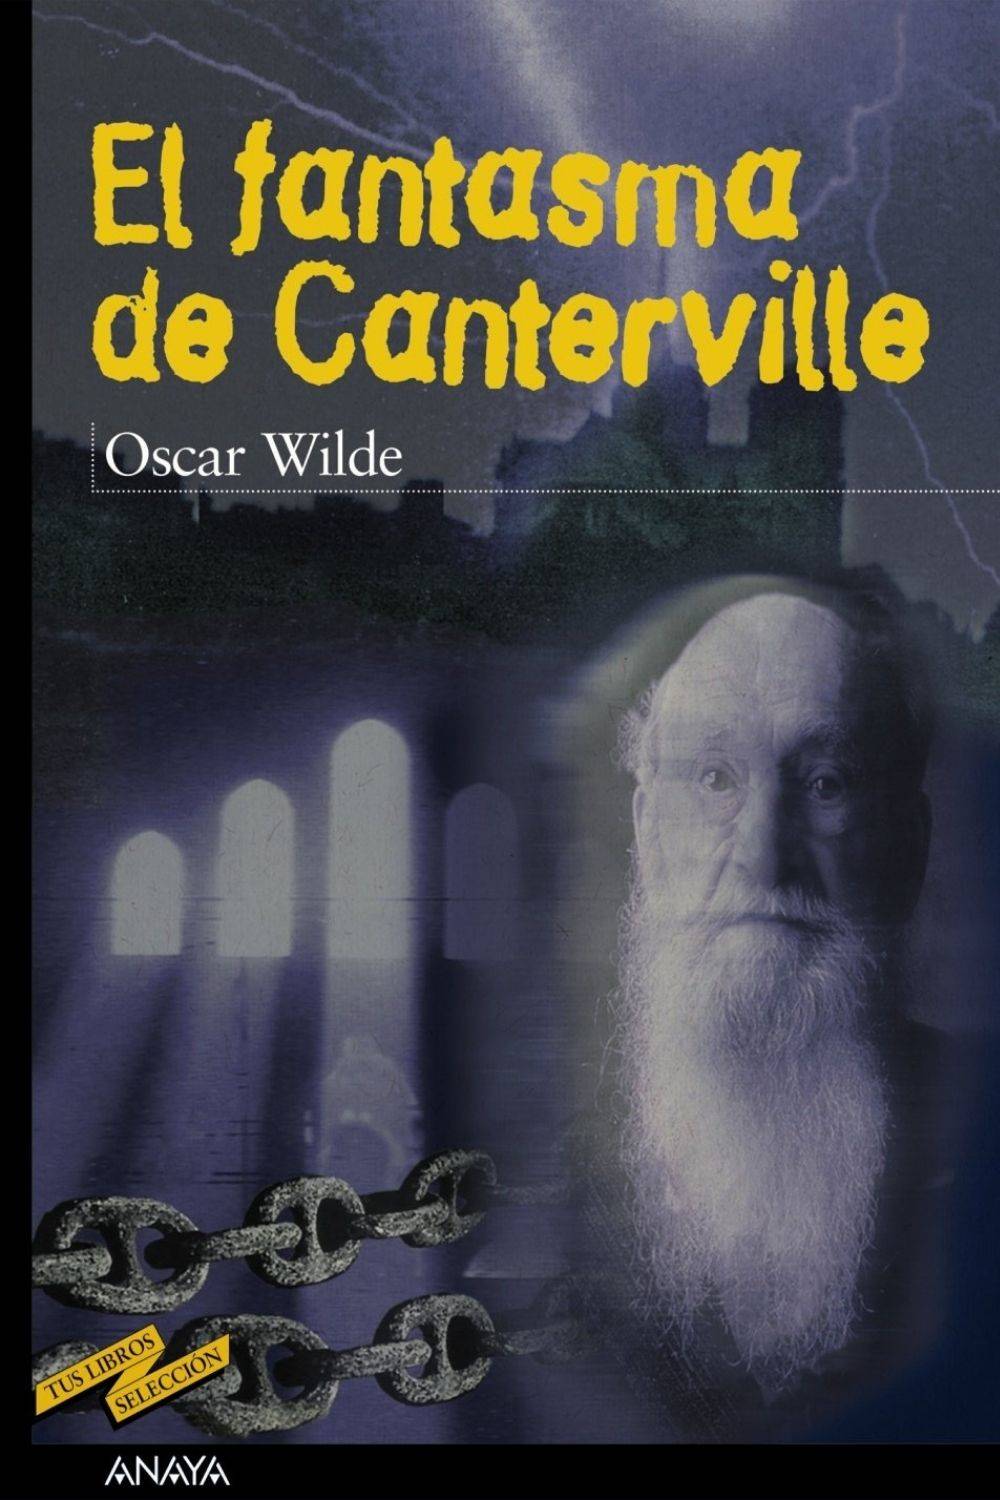 ‘El fantasma de Canterville’ de Oscar Wilde